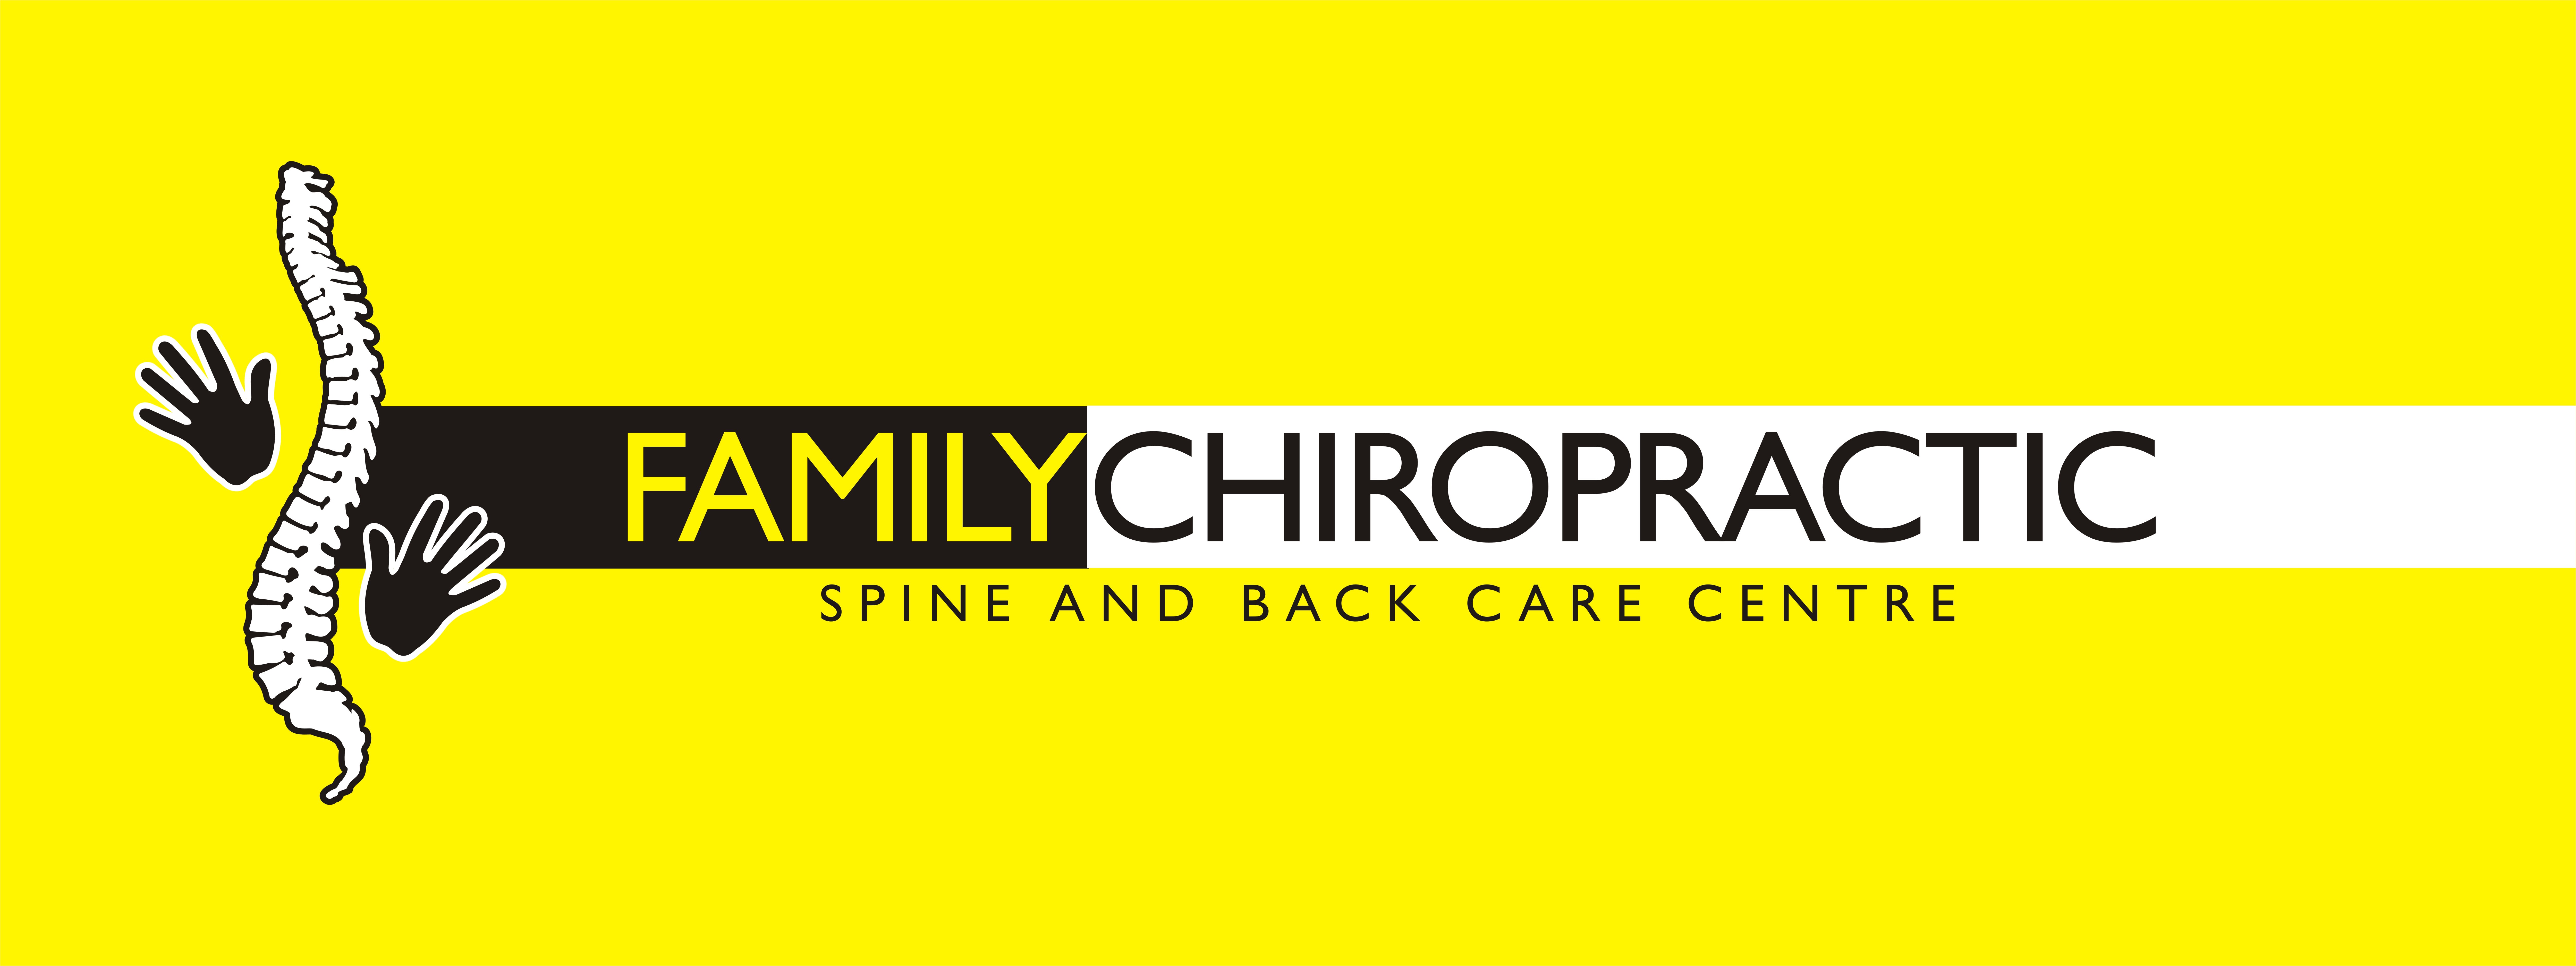 Best Chiropractor KL - Family Chiropractic